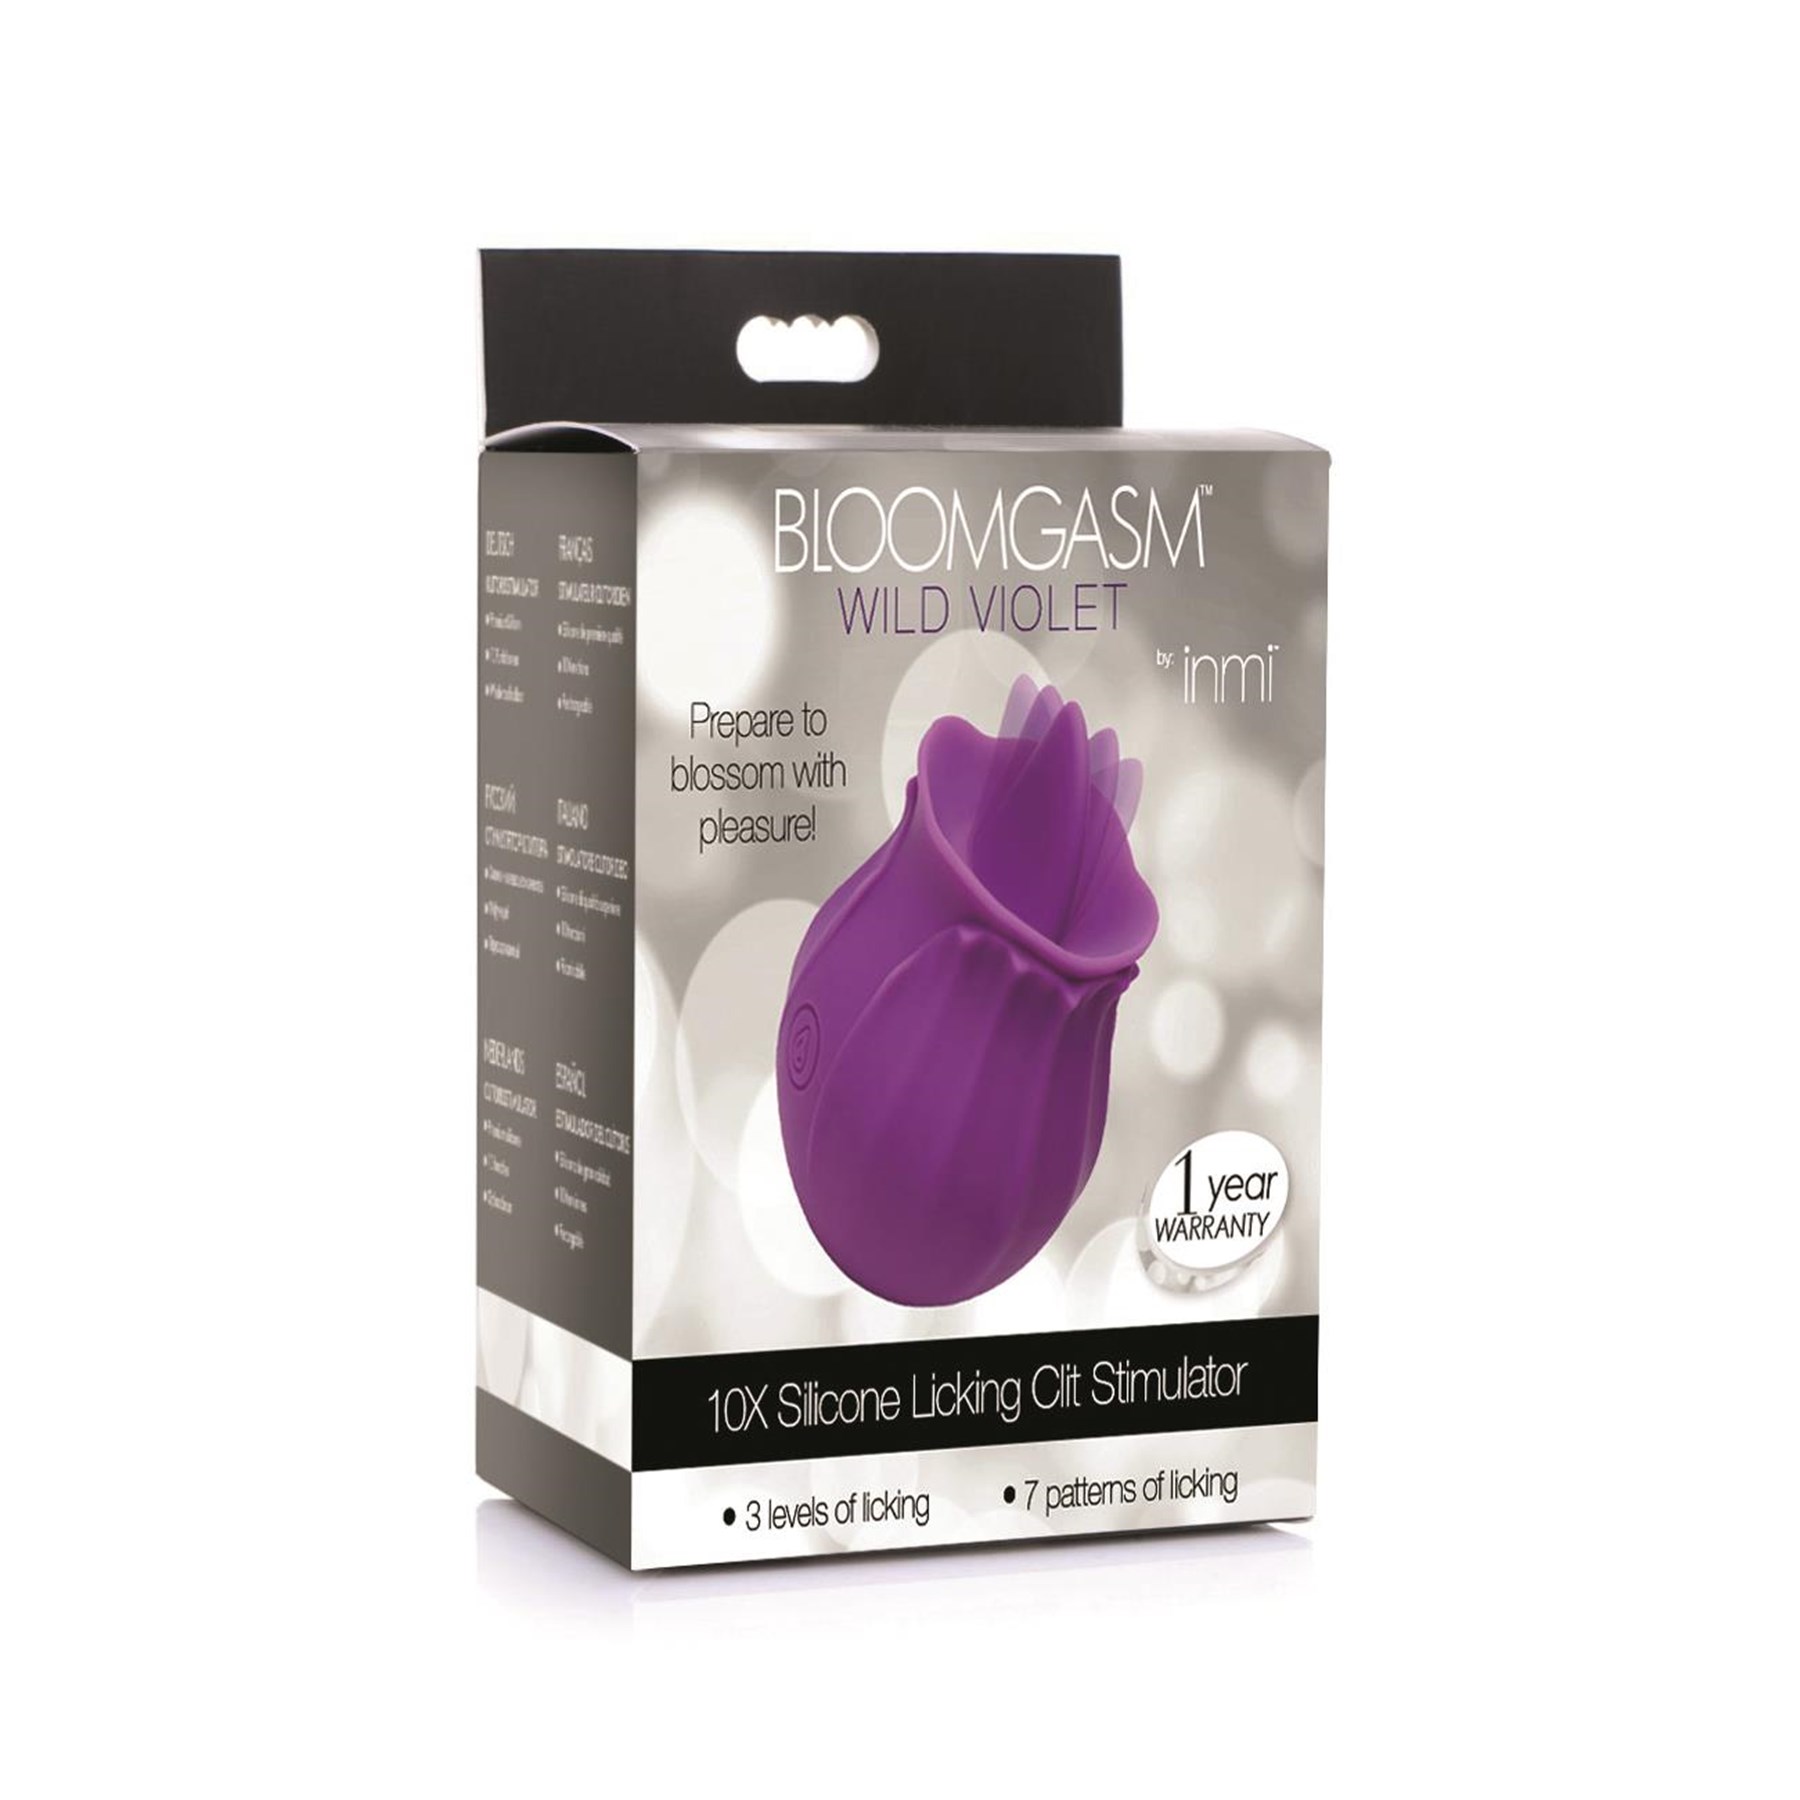 Bloomgasm Wild Violet Licking Clitoral Stimulator Packaging Shot